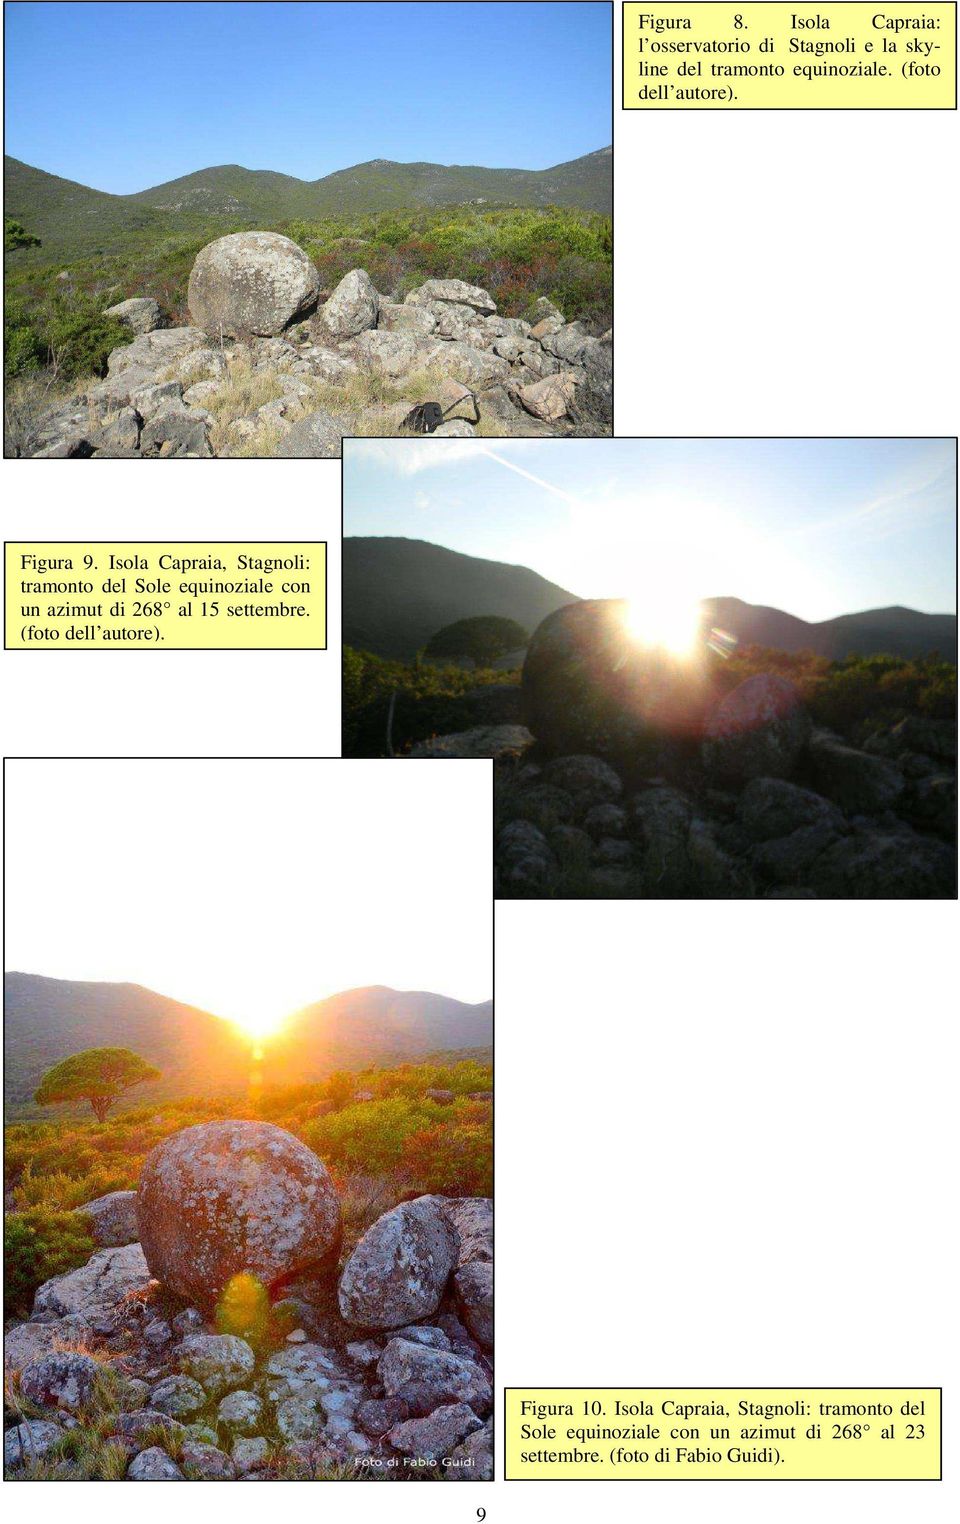 Isola Capraia, Stagnoli: tramonto del Sole equinoziale con un azimut di 268 al 15